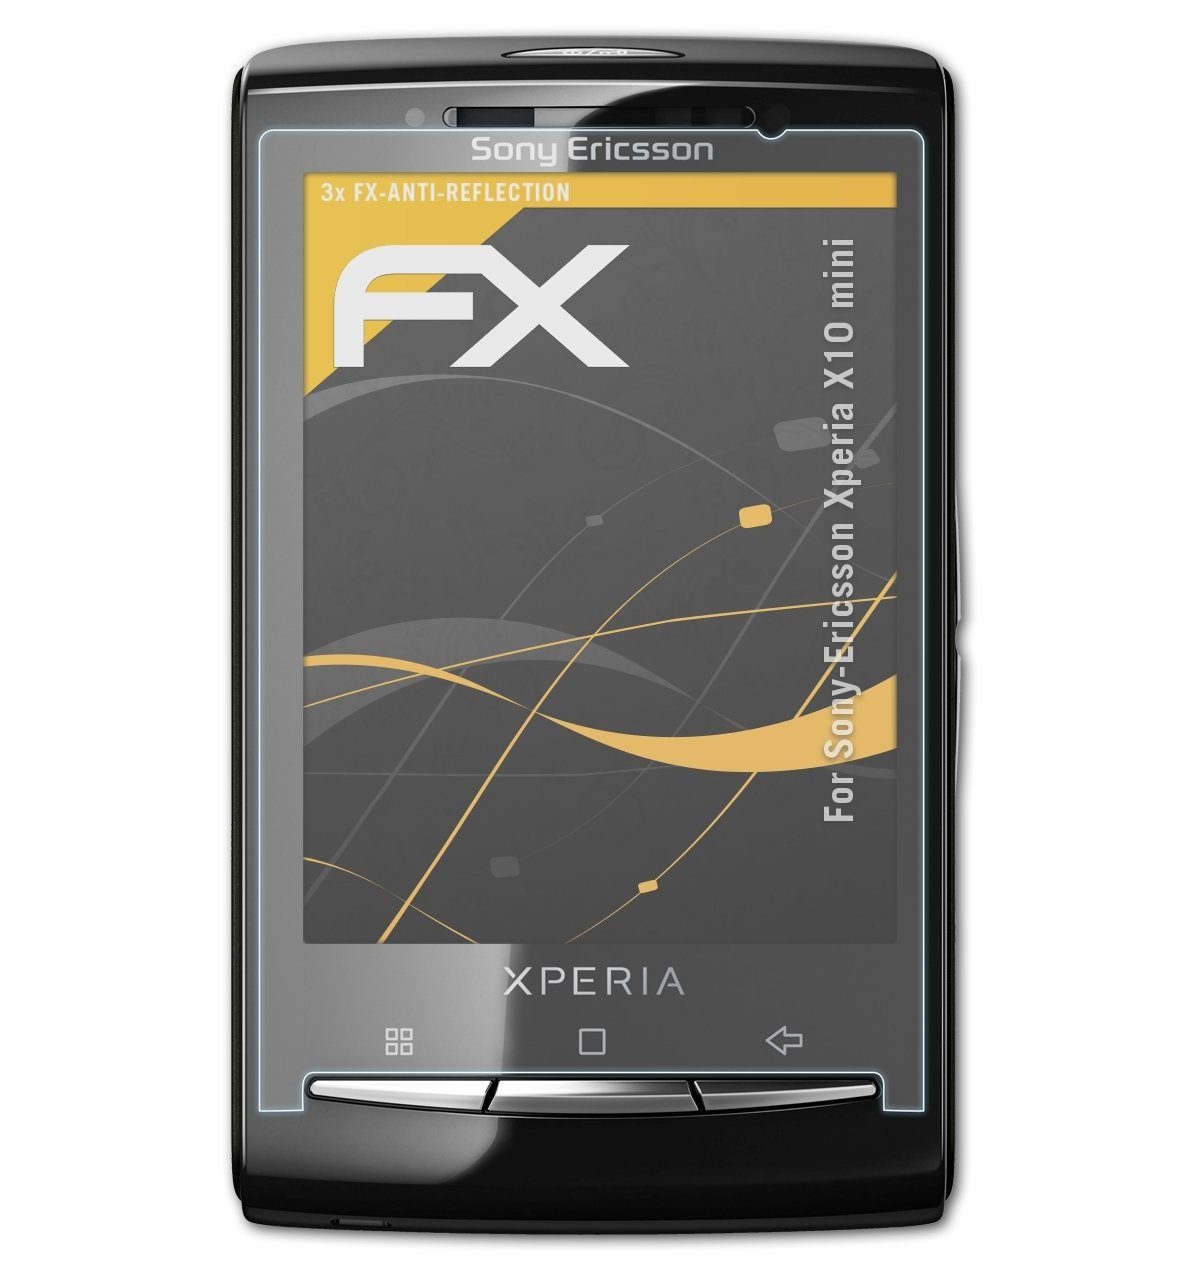 atFoliX Schutzfolie für Sony-Ericsson Xperia X10 mini, (3 Folien),  Entspiegelnd und stoßdämpfend